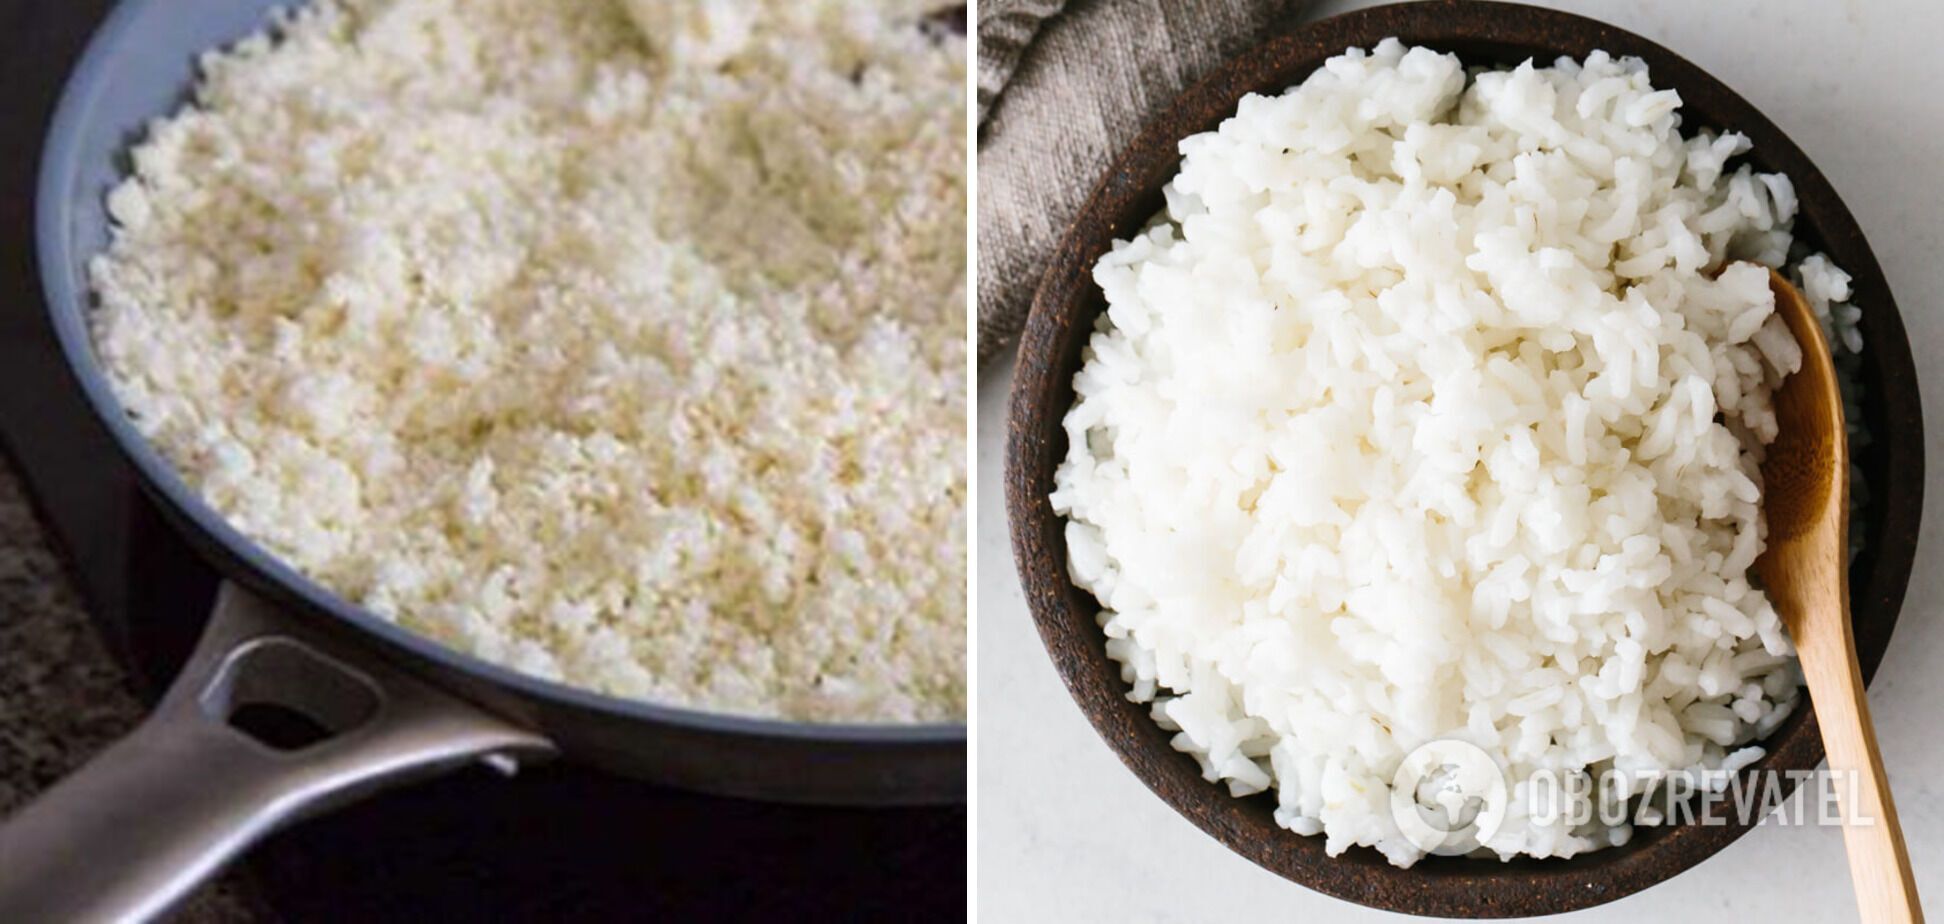 В процессе приготовления запрещено мешать рис, иначе он получится клейким